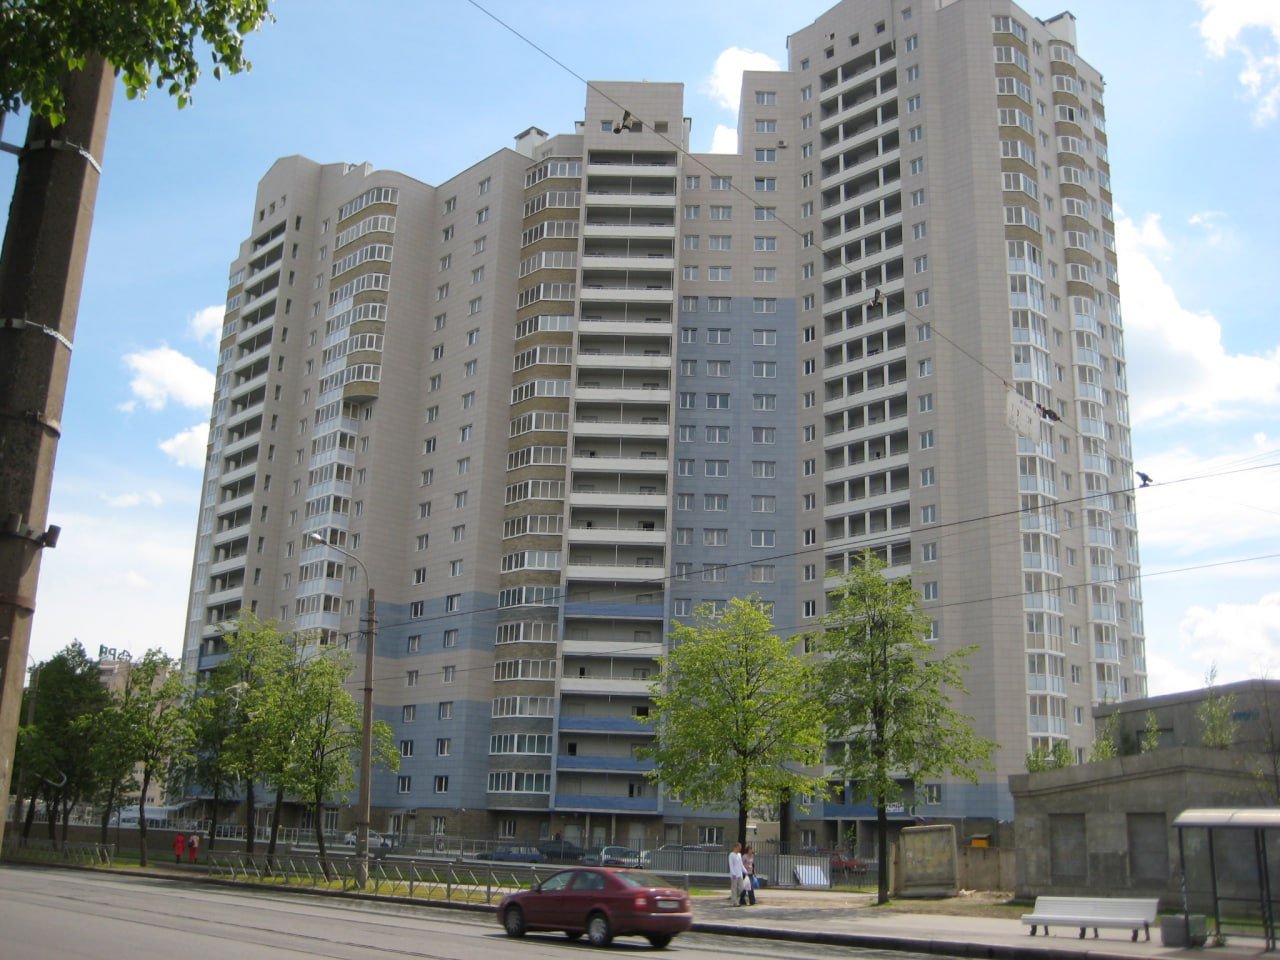 Цены на аренду квартир в России за последний год выросли на 25%